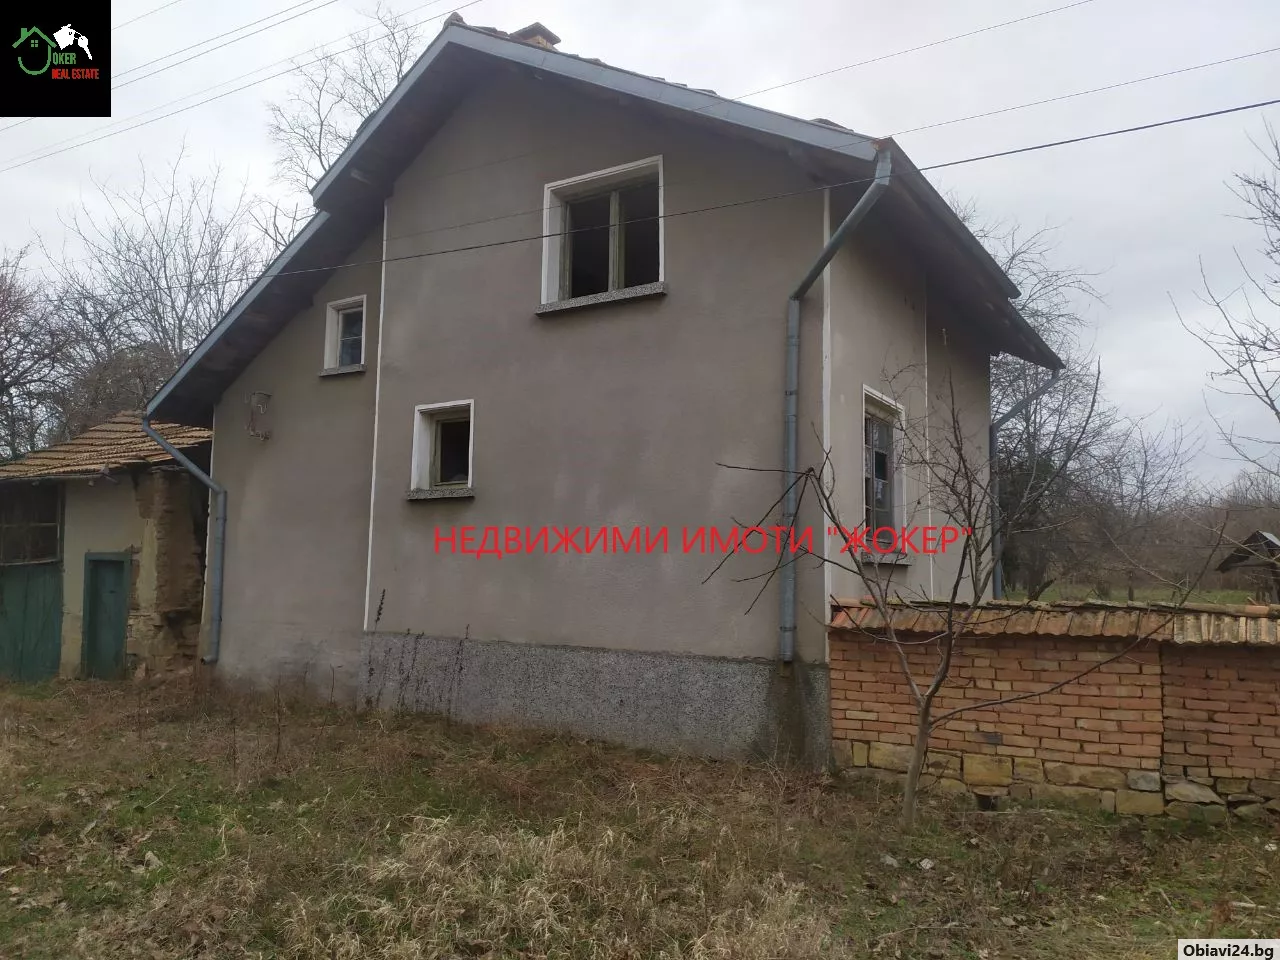 Къща в село Сушица - obiavi24.bg